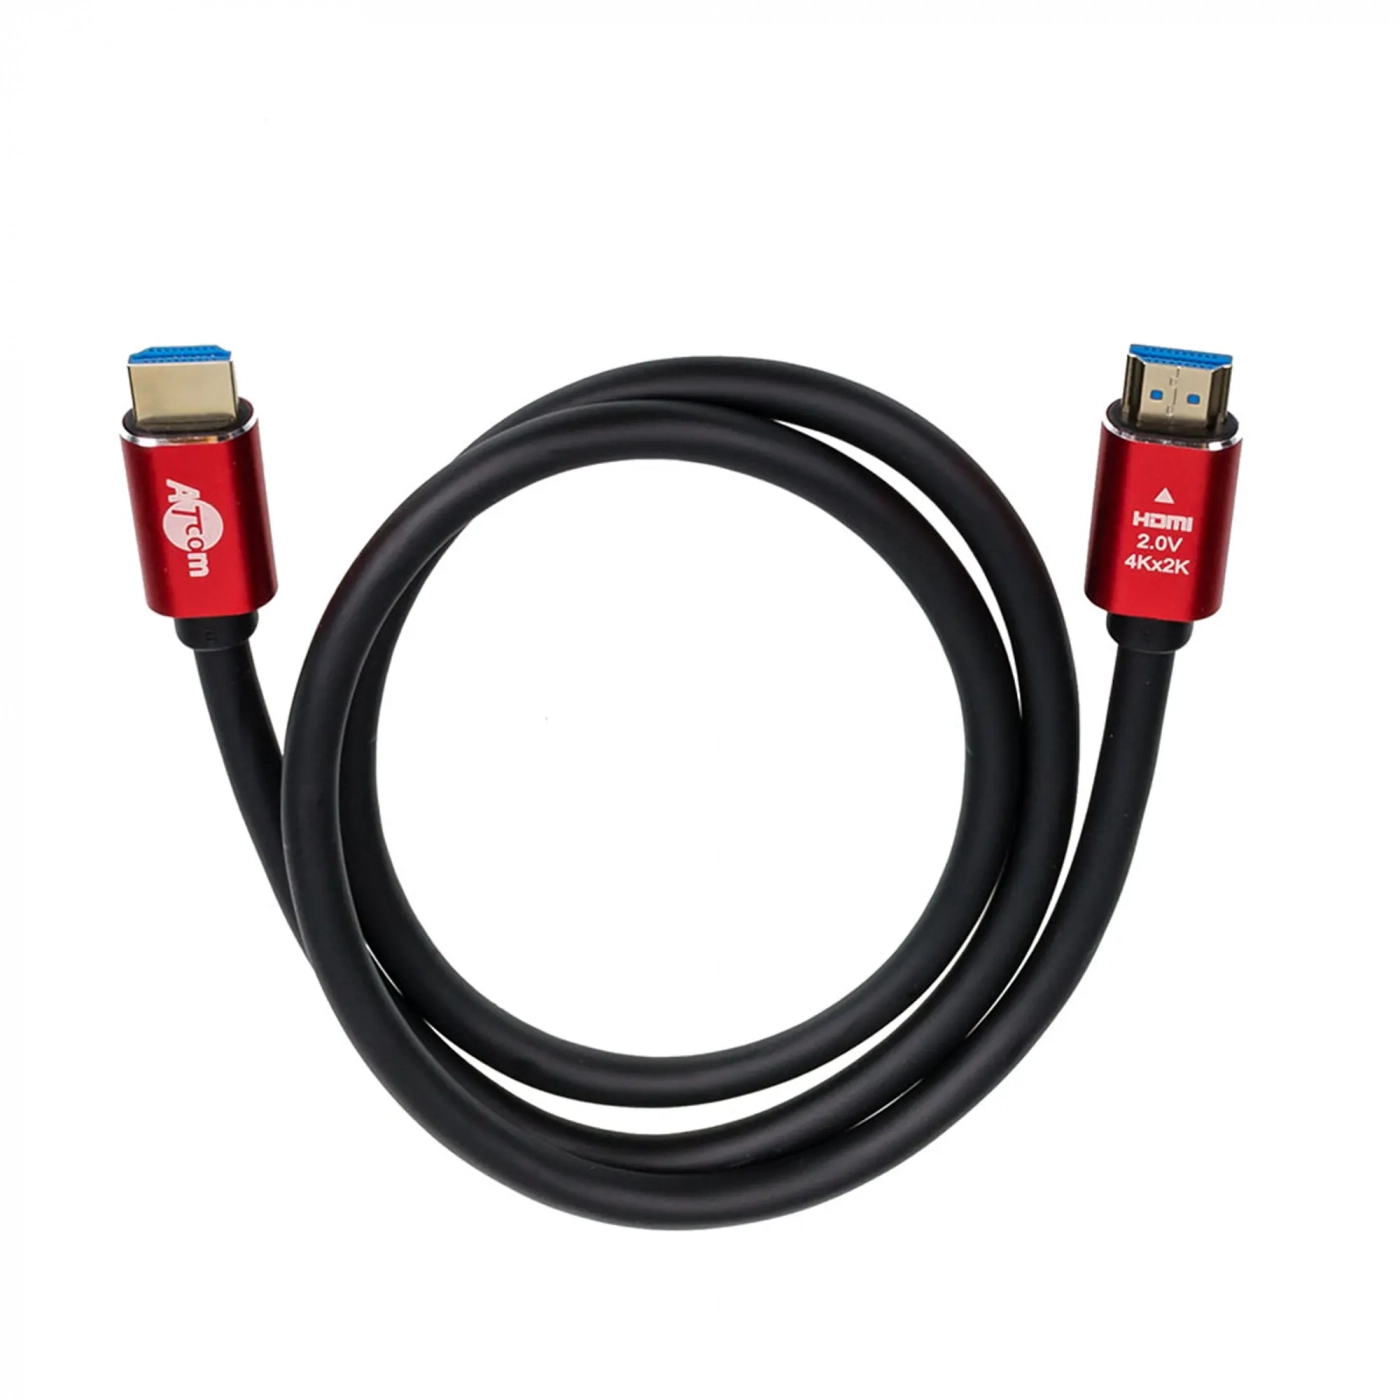 Купить Кабель ATcom HDMI-HDMI Red/Gold, пакет, 5м, 4К, VER 2.0 - фото 2